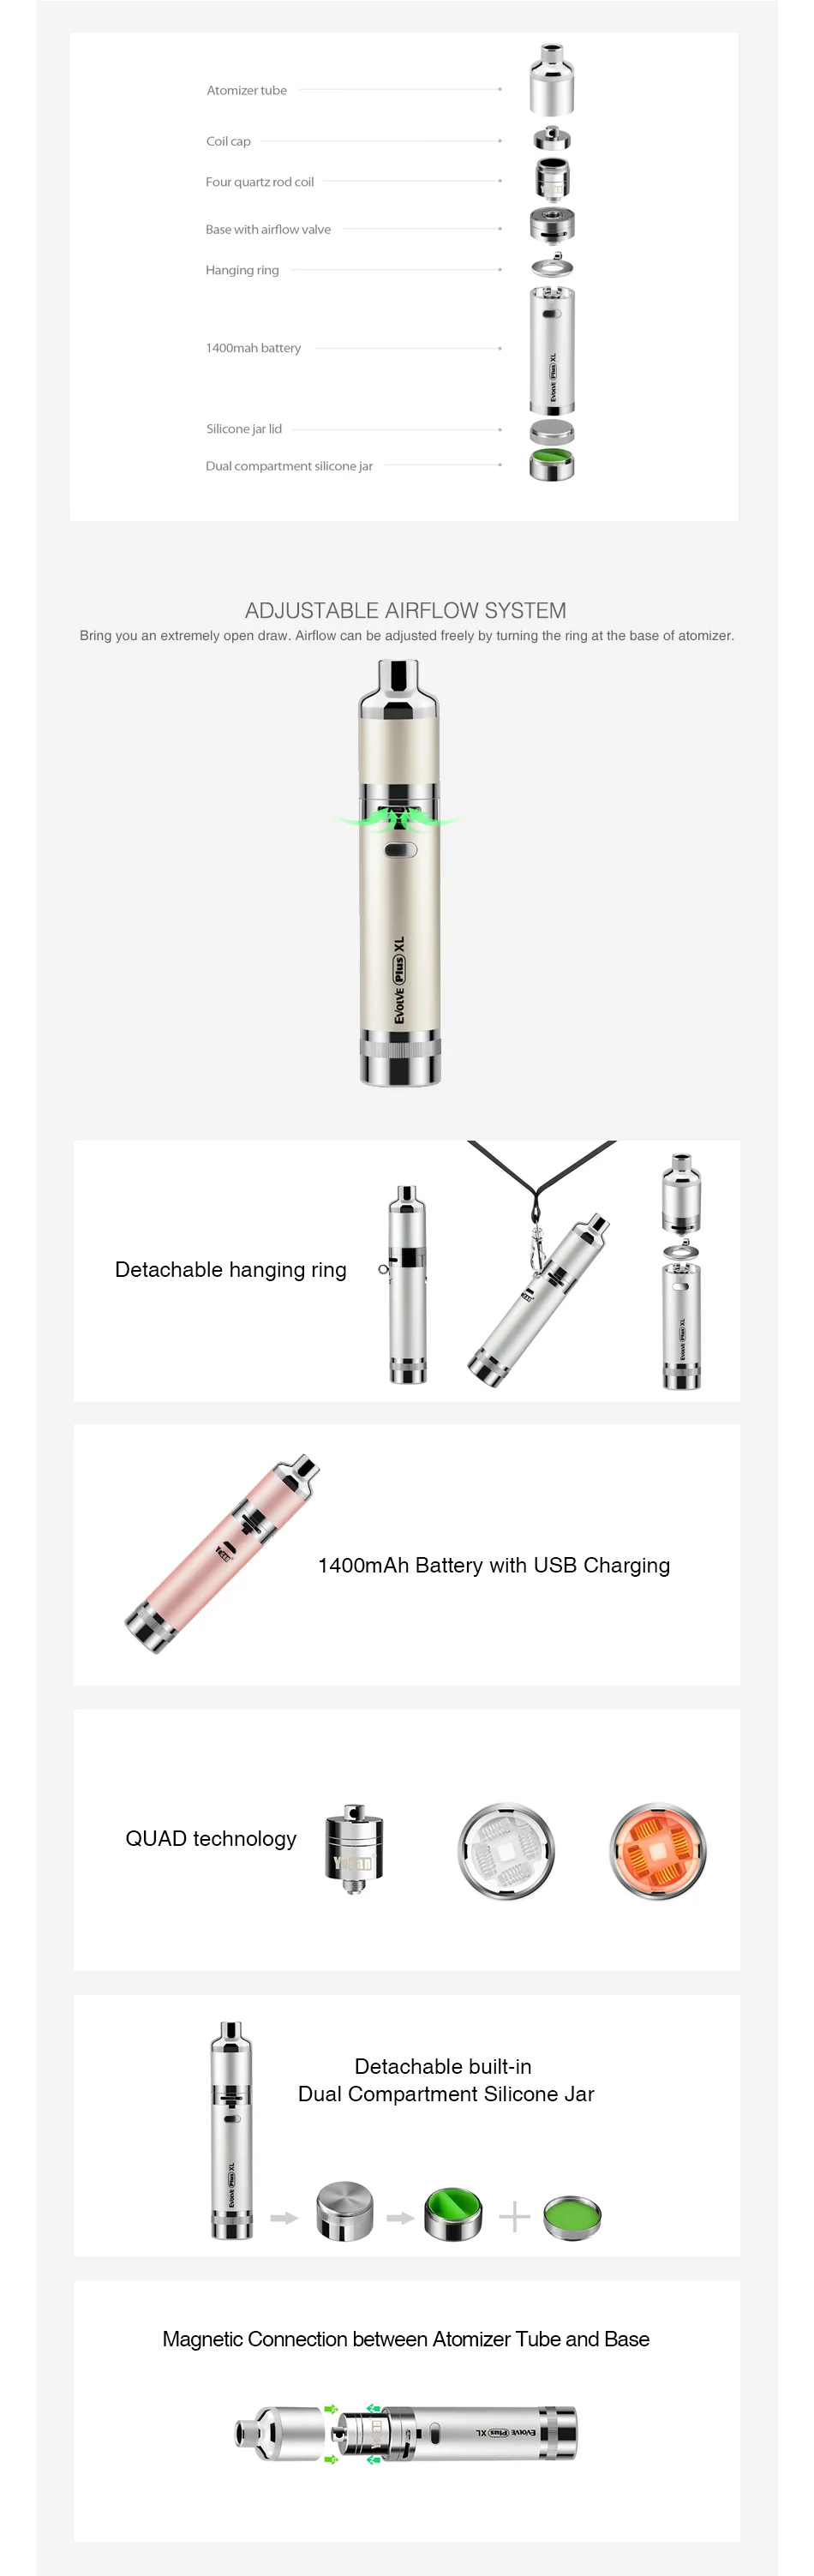 Yocan Evolve Plus XL Wax Vape Pen Kit 1400mAh